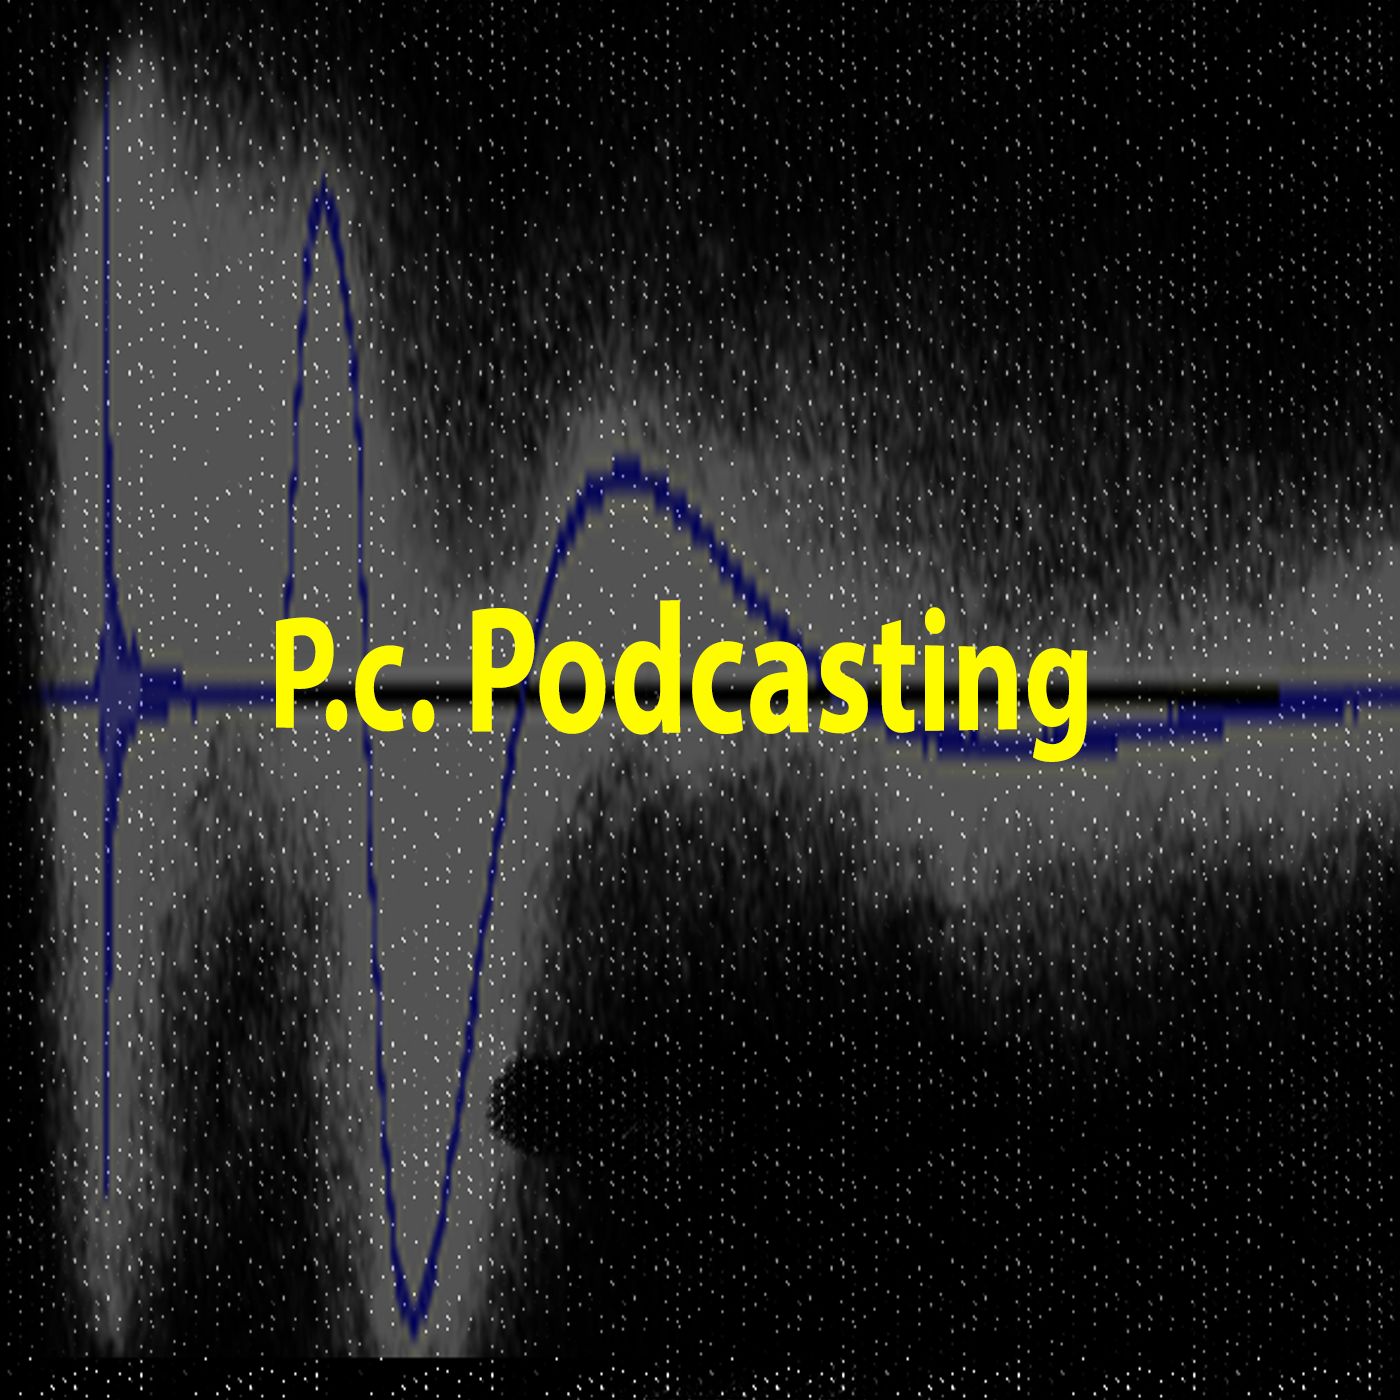 P.c. Podcasting